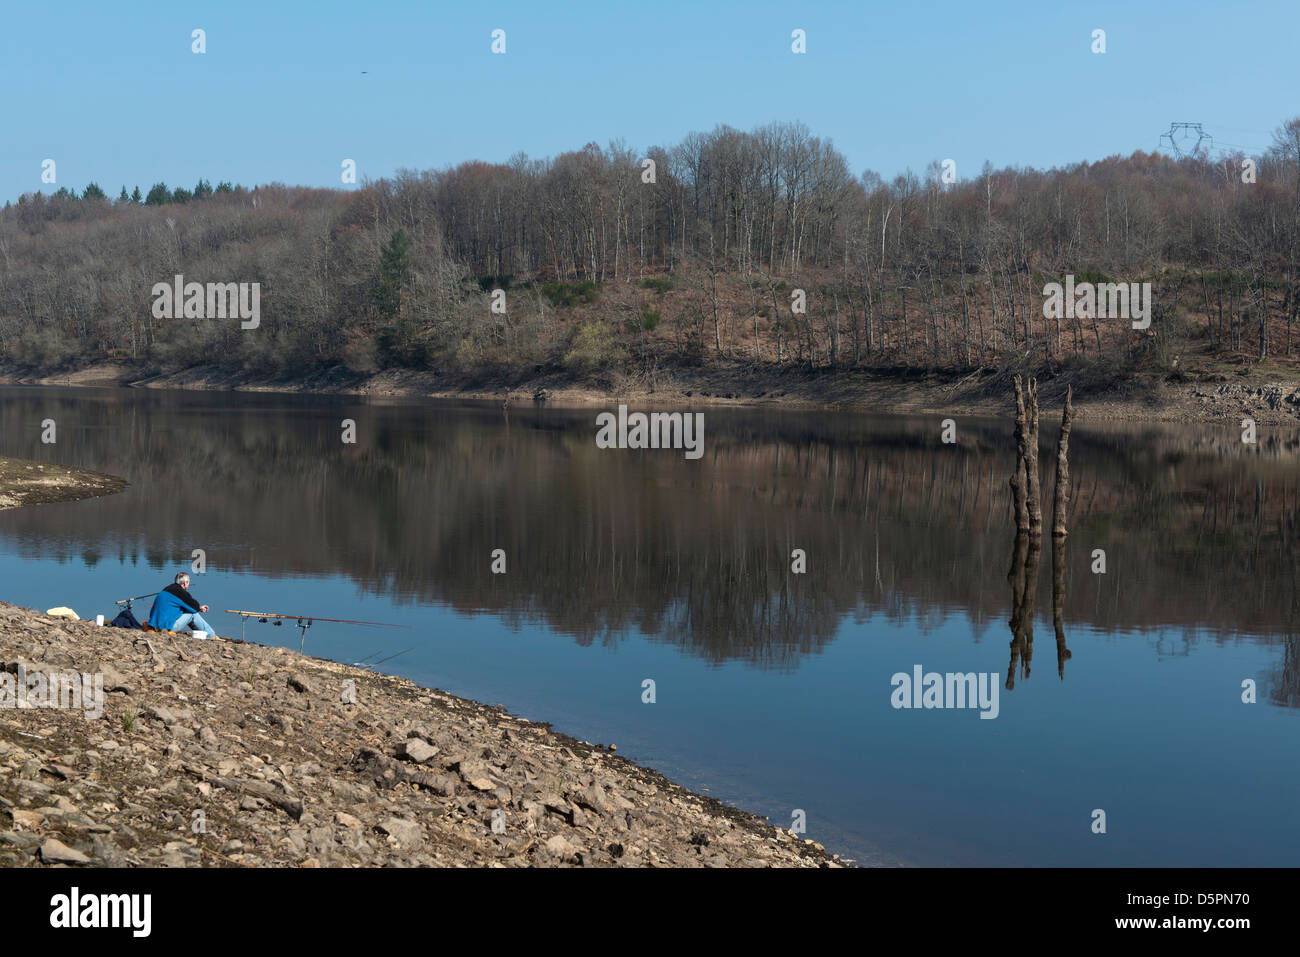 Pêcheur de carpe sur les rives de la rivière, Chauverne-Neyre Malmouche, Creuse, Limousin, France Banque D'Images